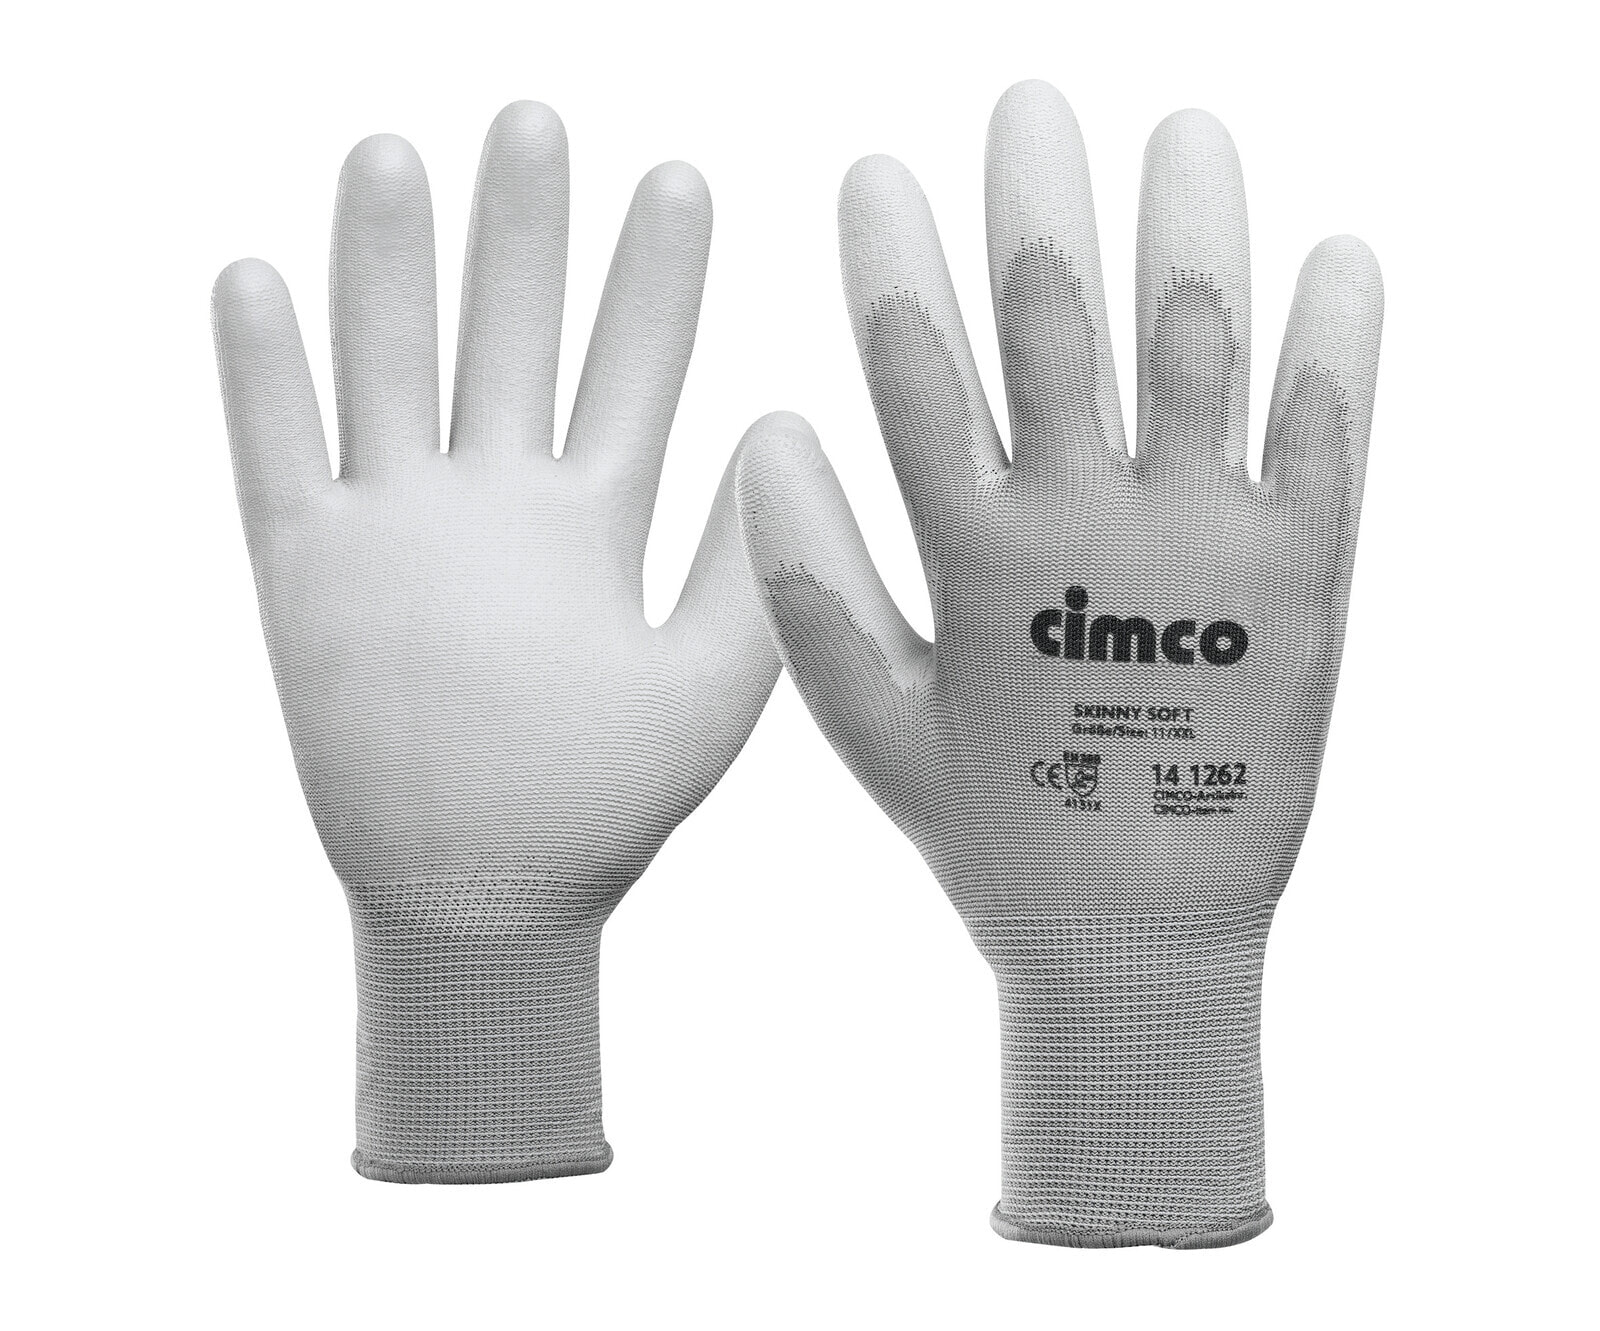 Cimco 141260 - Workshop gloves